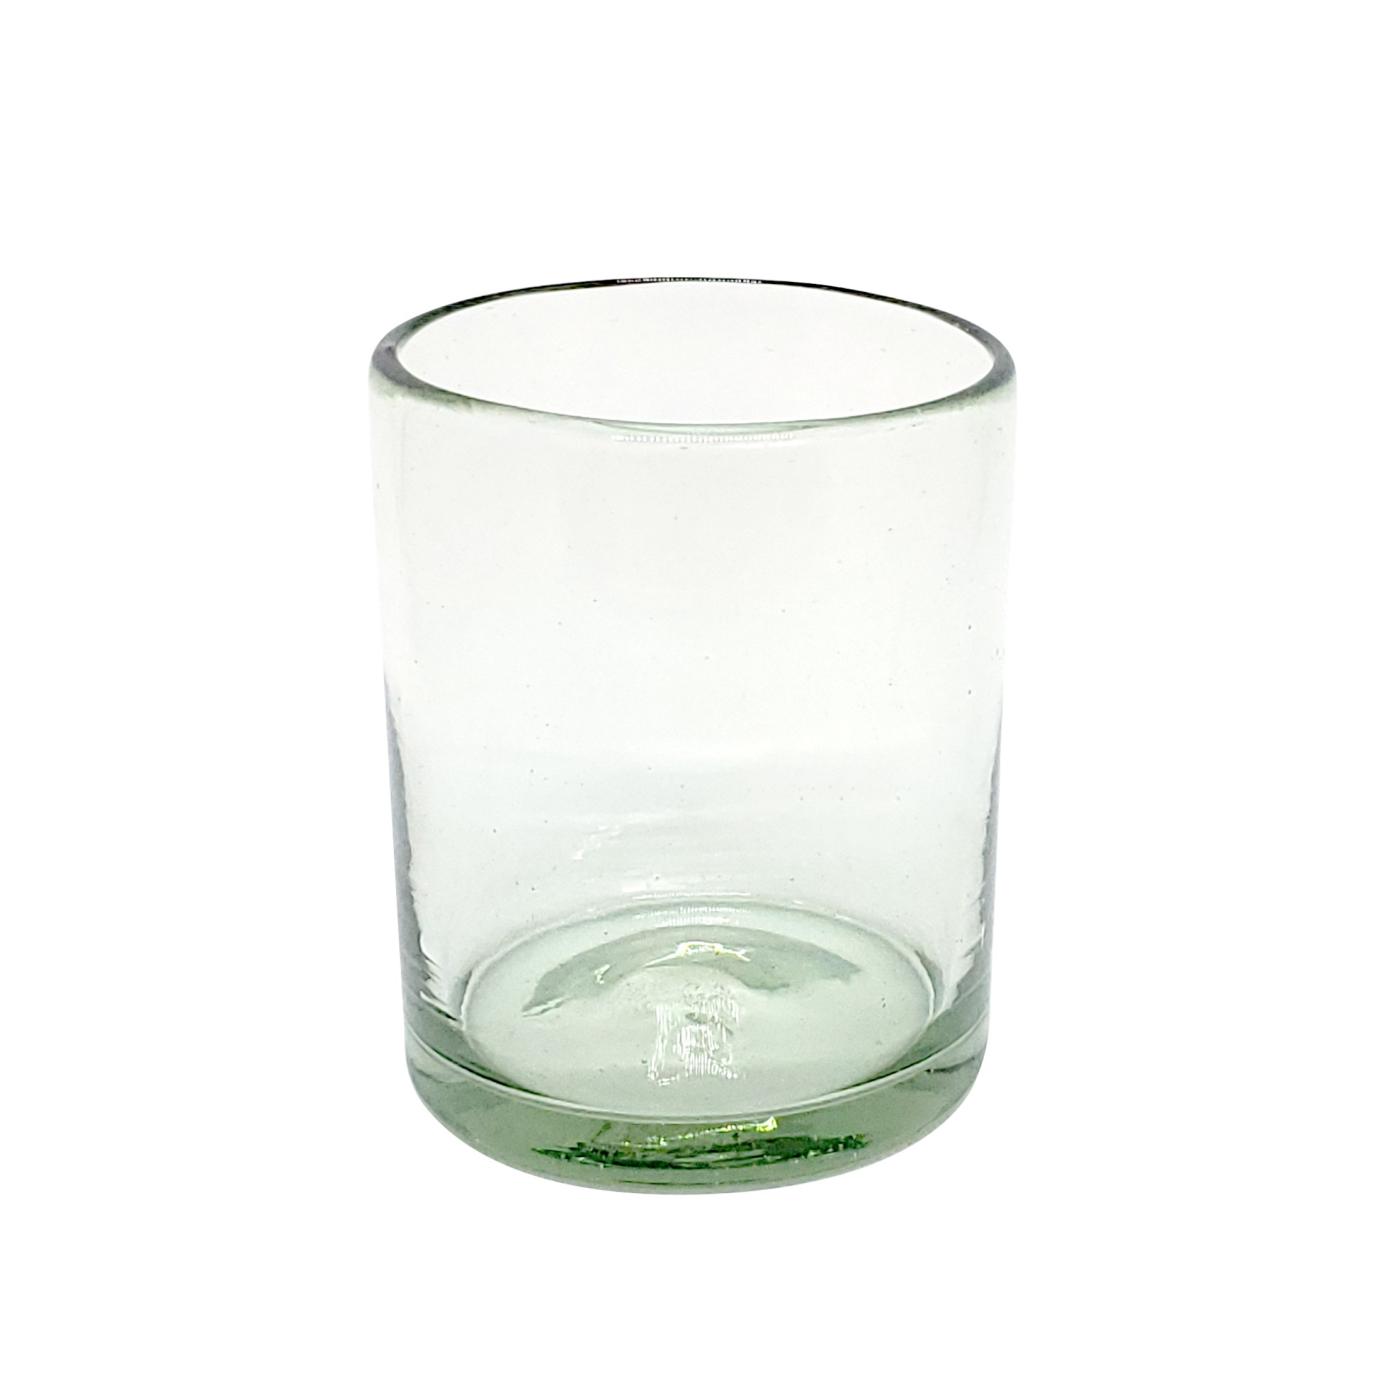 Vasos de Vidrio Soplado al Mayoreo / vasos chicos transparentes, 10 oz, Vidrio Reciclado, Libre de Plomo y Toxinas / Para una apariencia ms tradicional, stos vasos de vidrio soplado son creados de manera 100% artesanal.